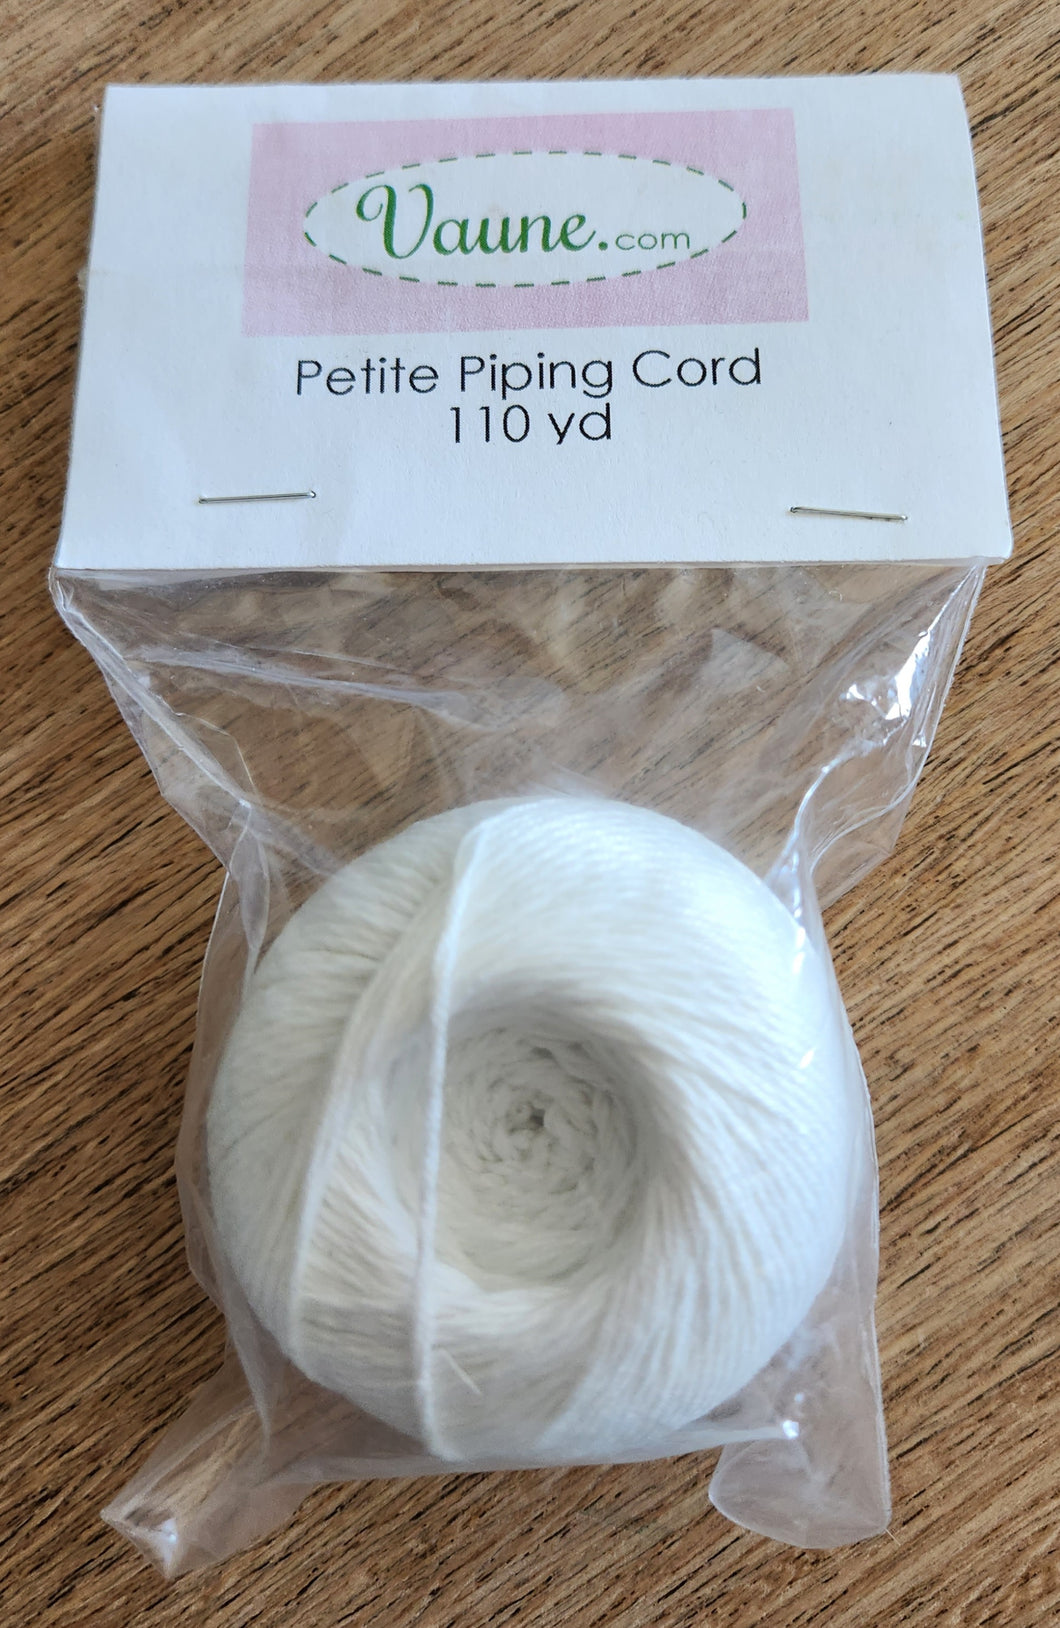 Piping cord